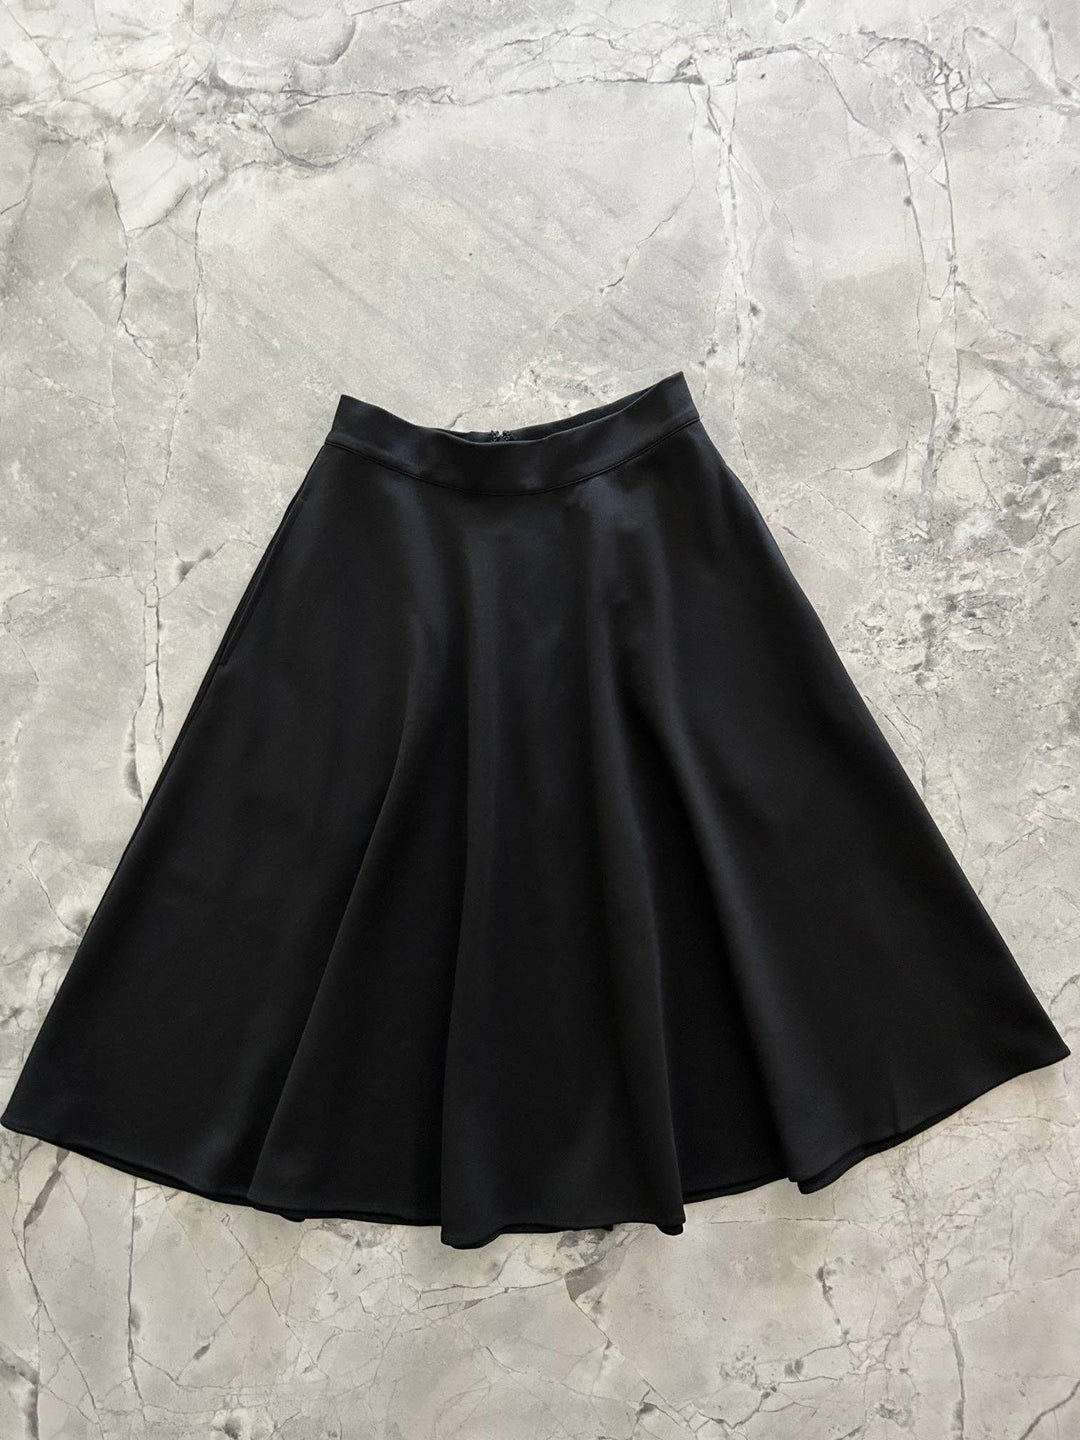 Charlotte Nova Skirt